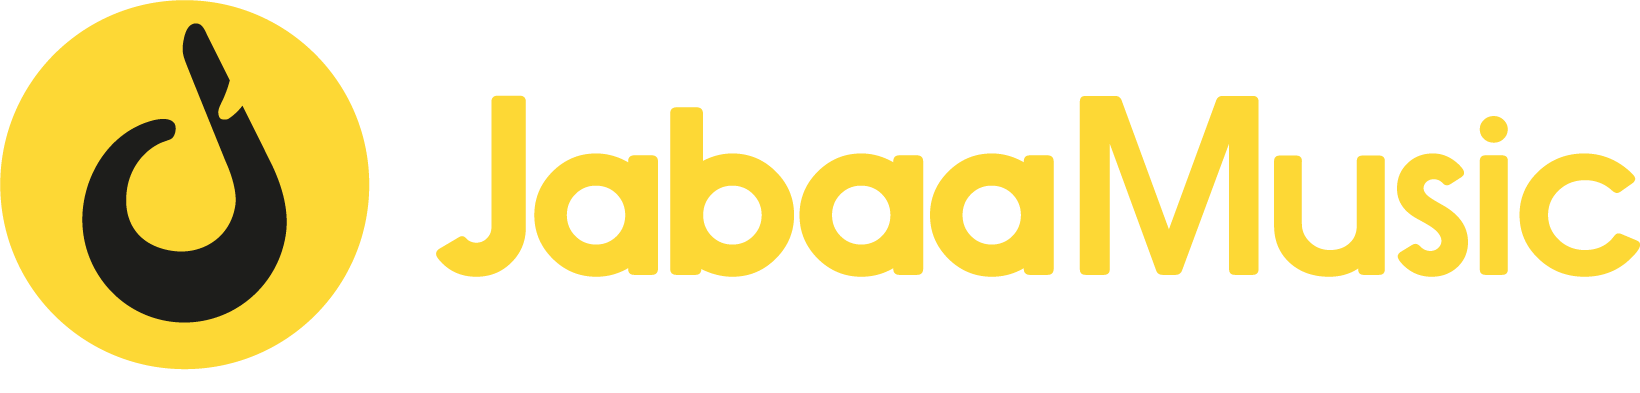 JabaaMusic